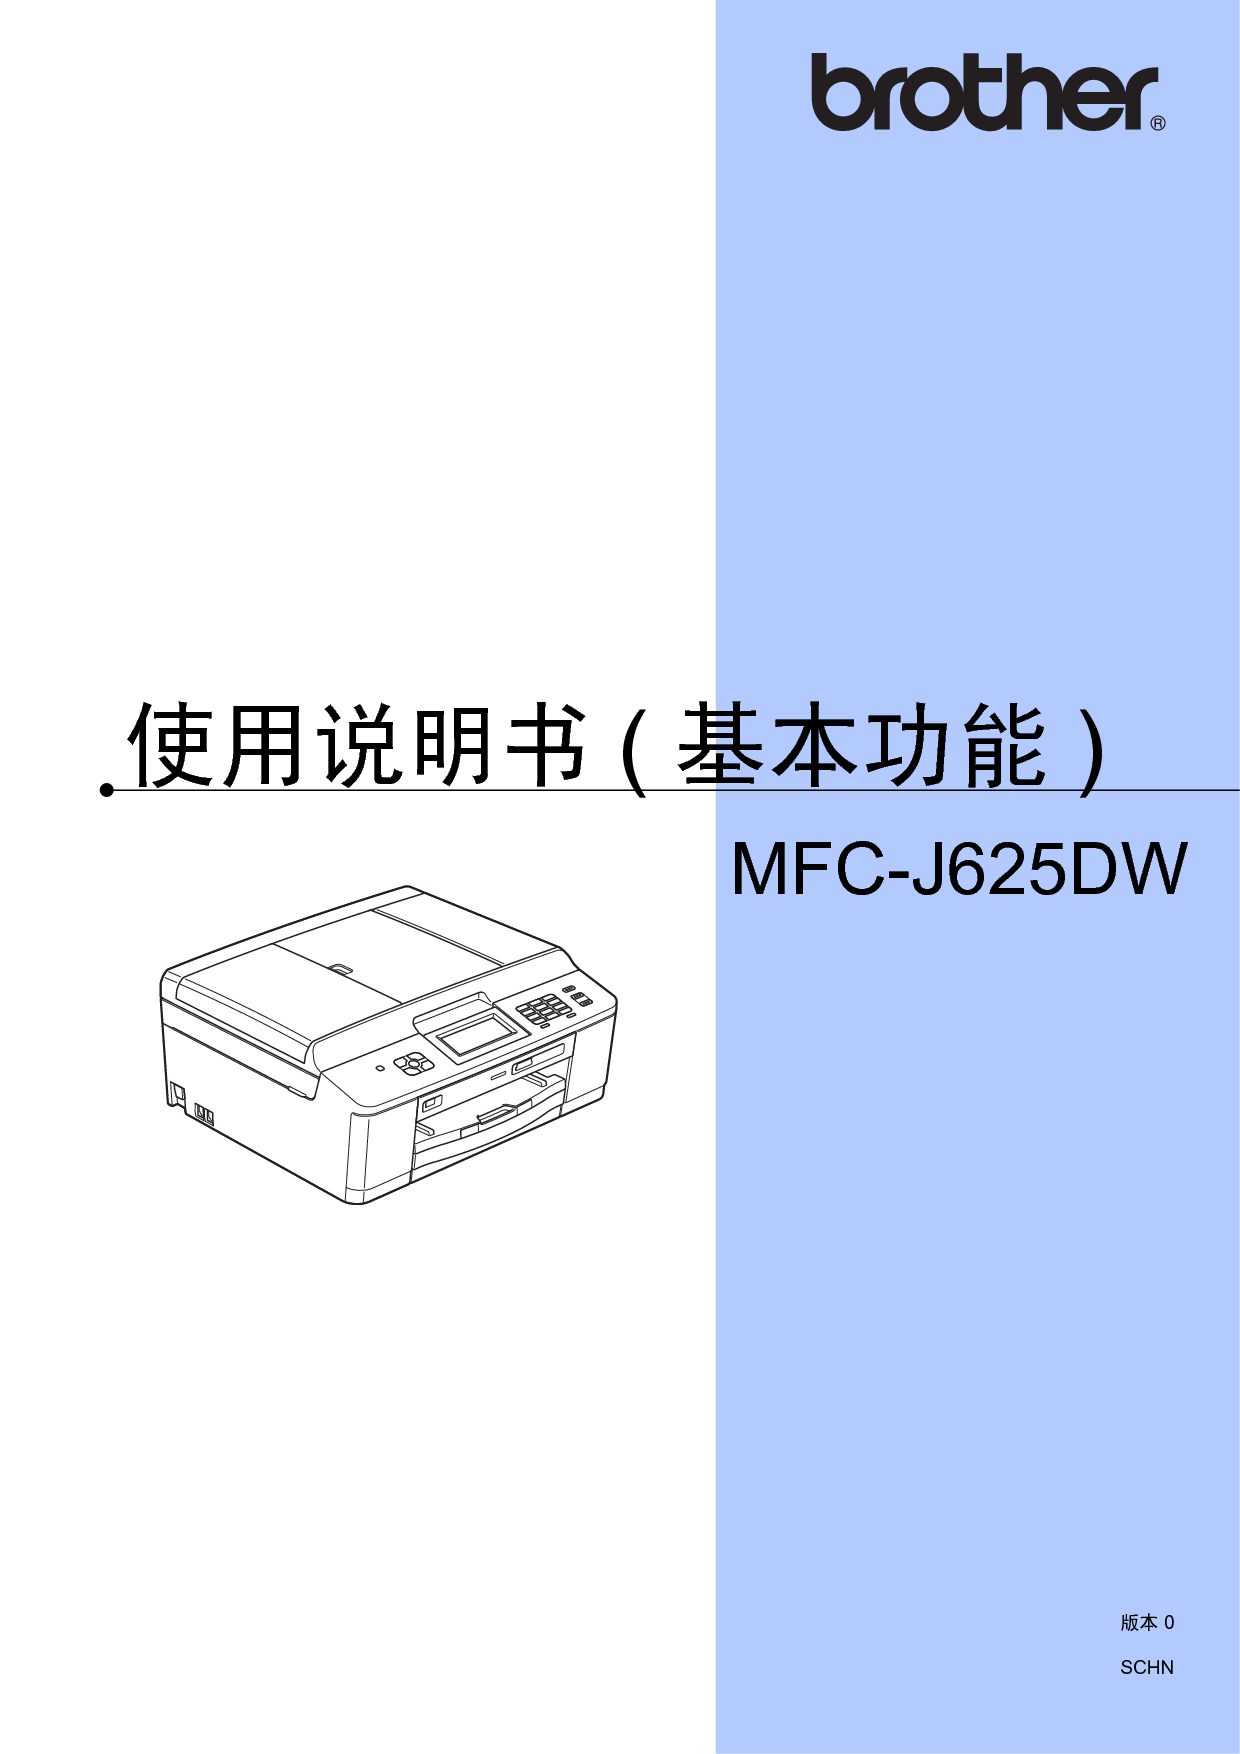 兄弟 Brother MFC-J625DW 基本 使用说明书 封面